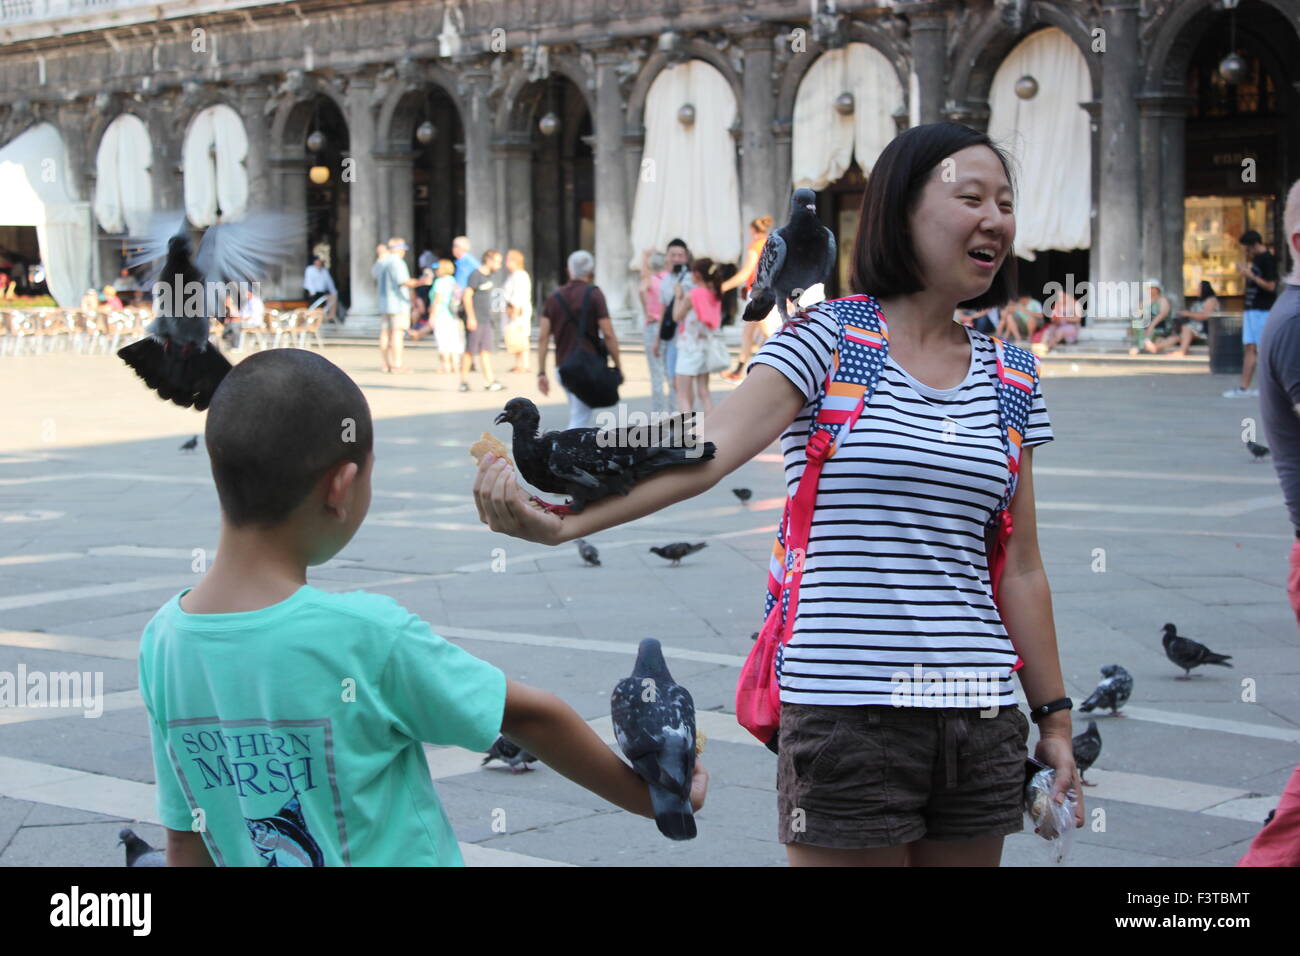 Une femme asiatique pose avec les pigeons dans la place San Marco, Venise Italie Banque D'Images